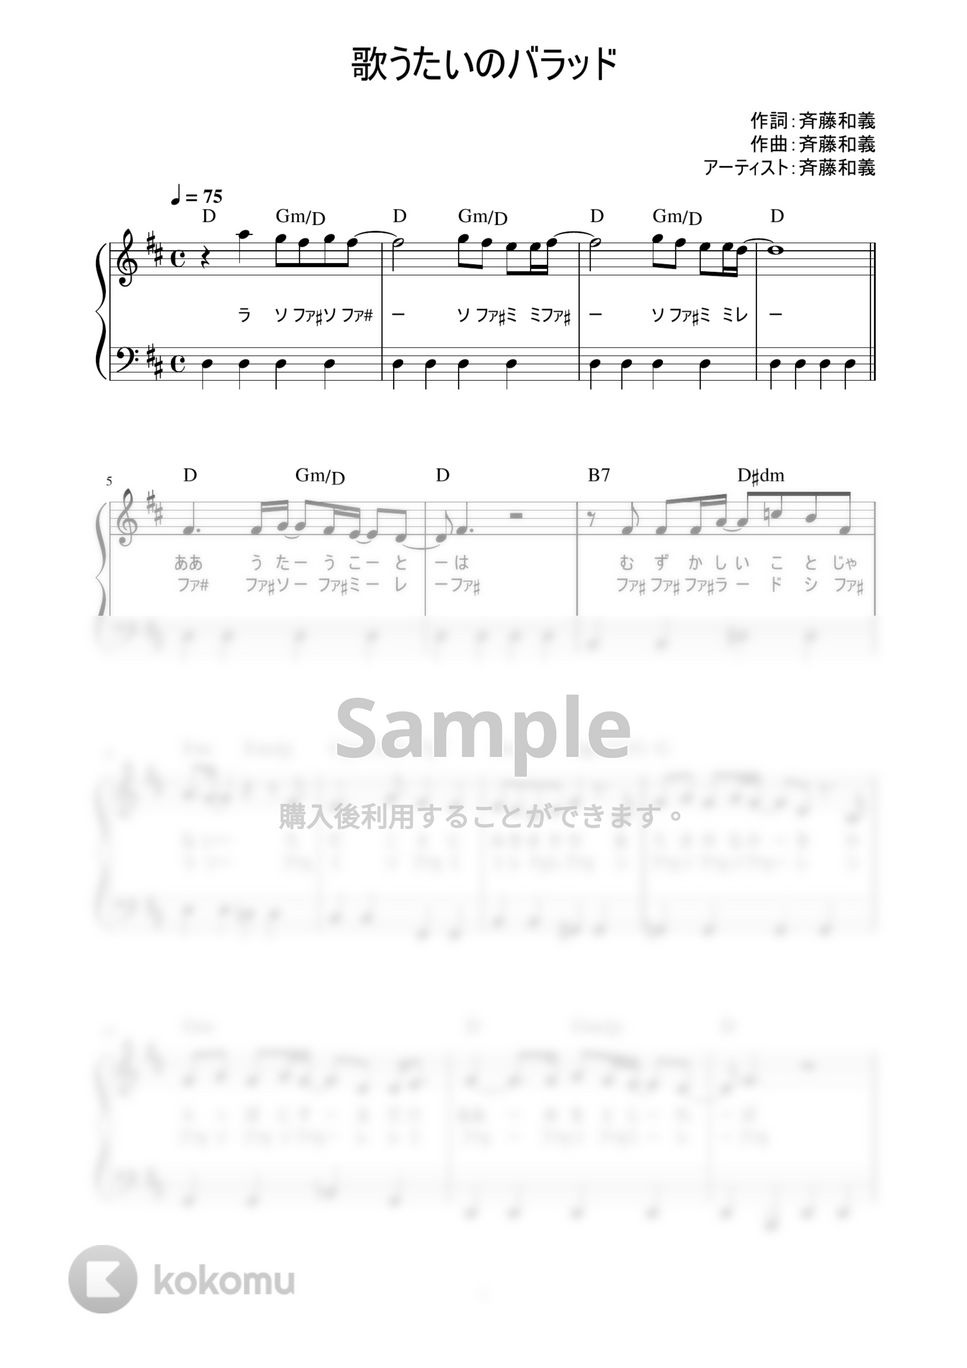 斉藤和義 - 歌うたいのバラッド (かんたん / 歌詞付き / ドレミ付き / 初心者) by piano.tokyo